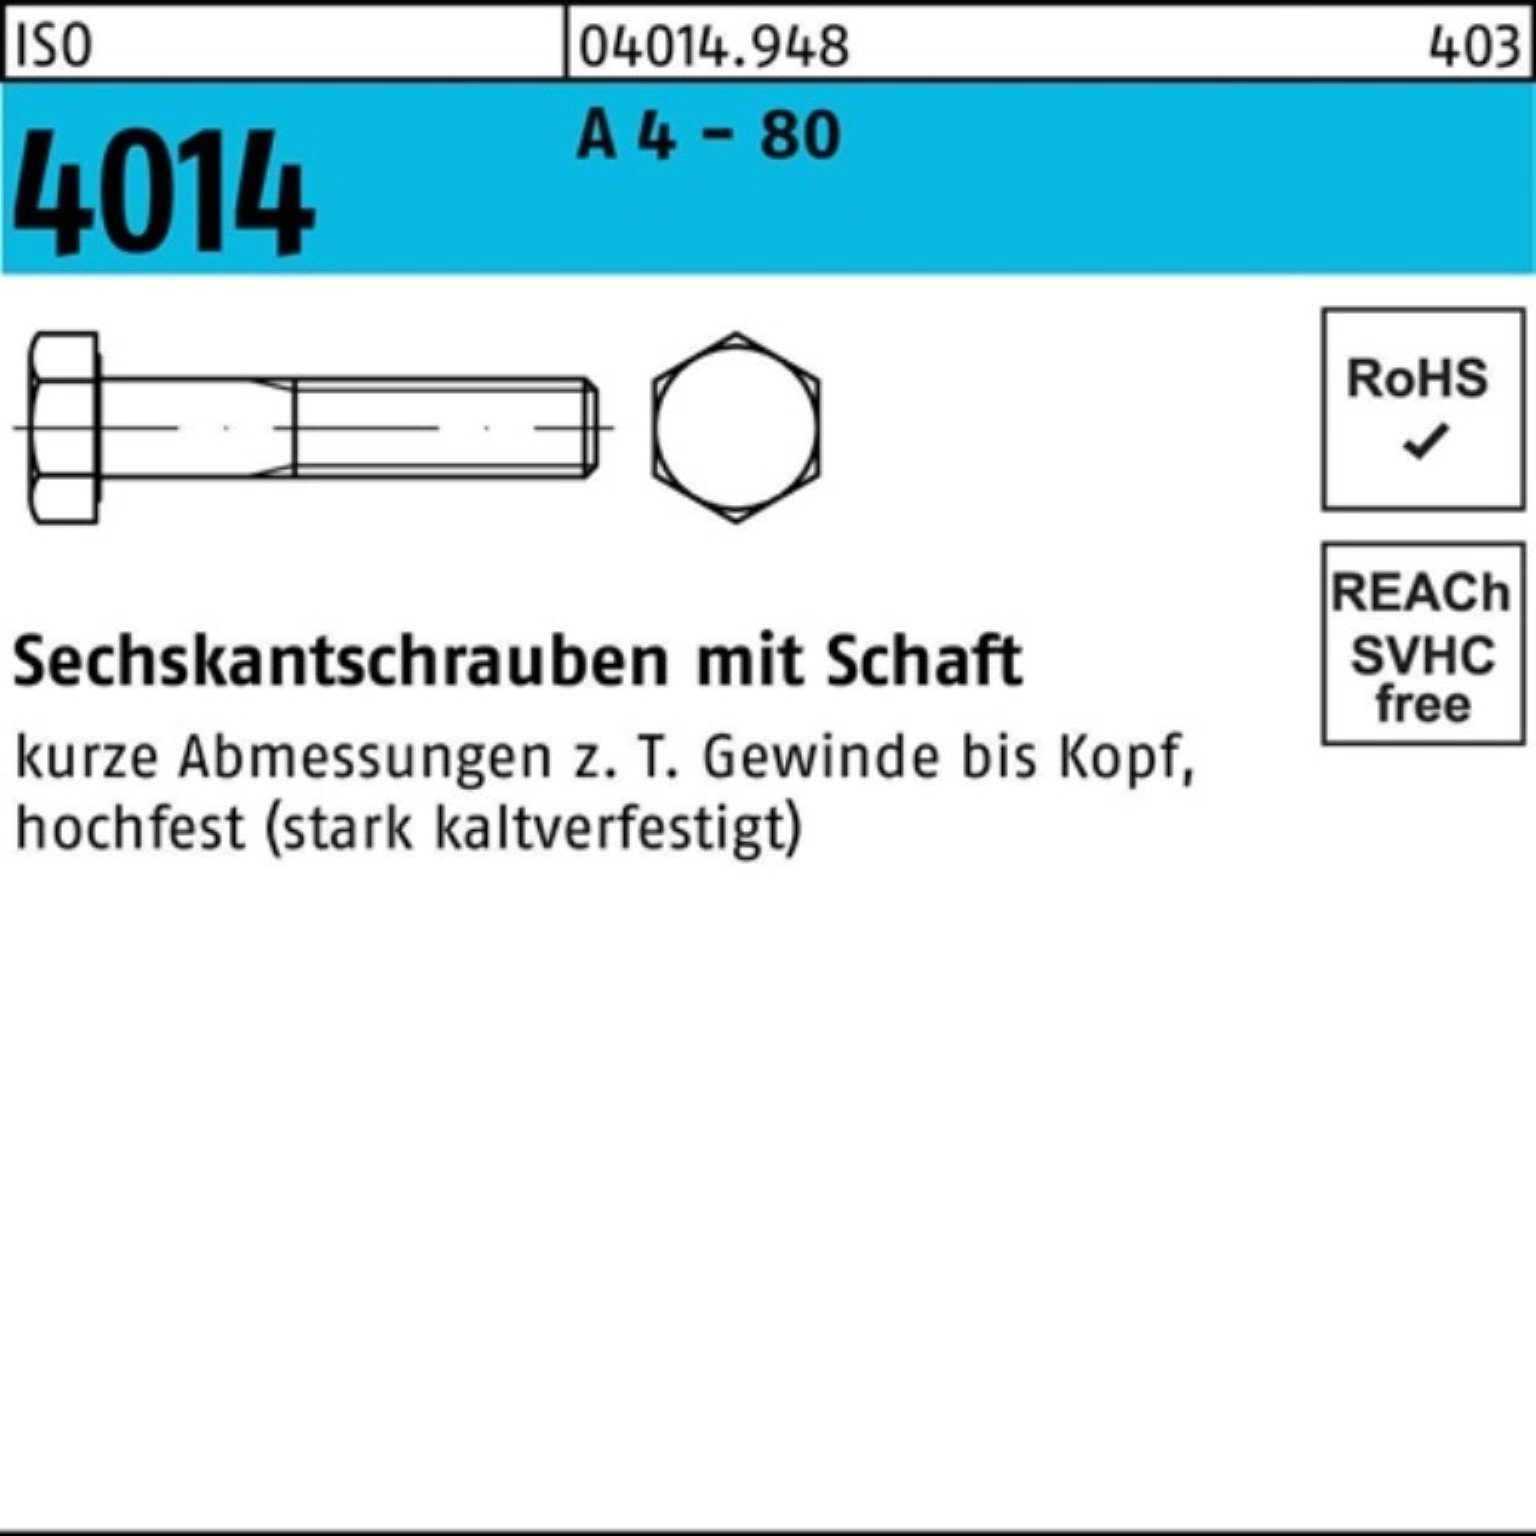 Bufab Sechskantschraube 100er Pack Sechskantschraube ISO 4014 Schaft M16x 150 A 4 - 80 1 Stüc